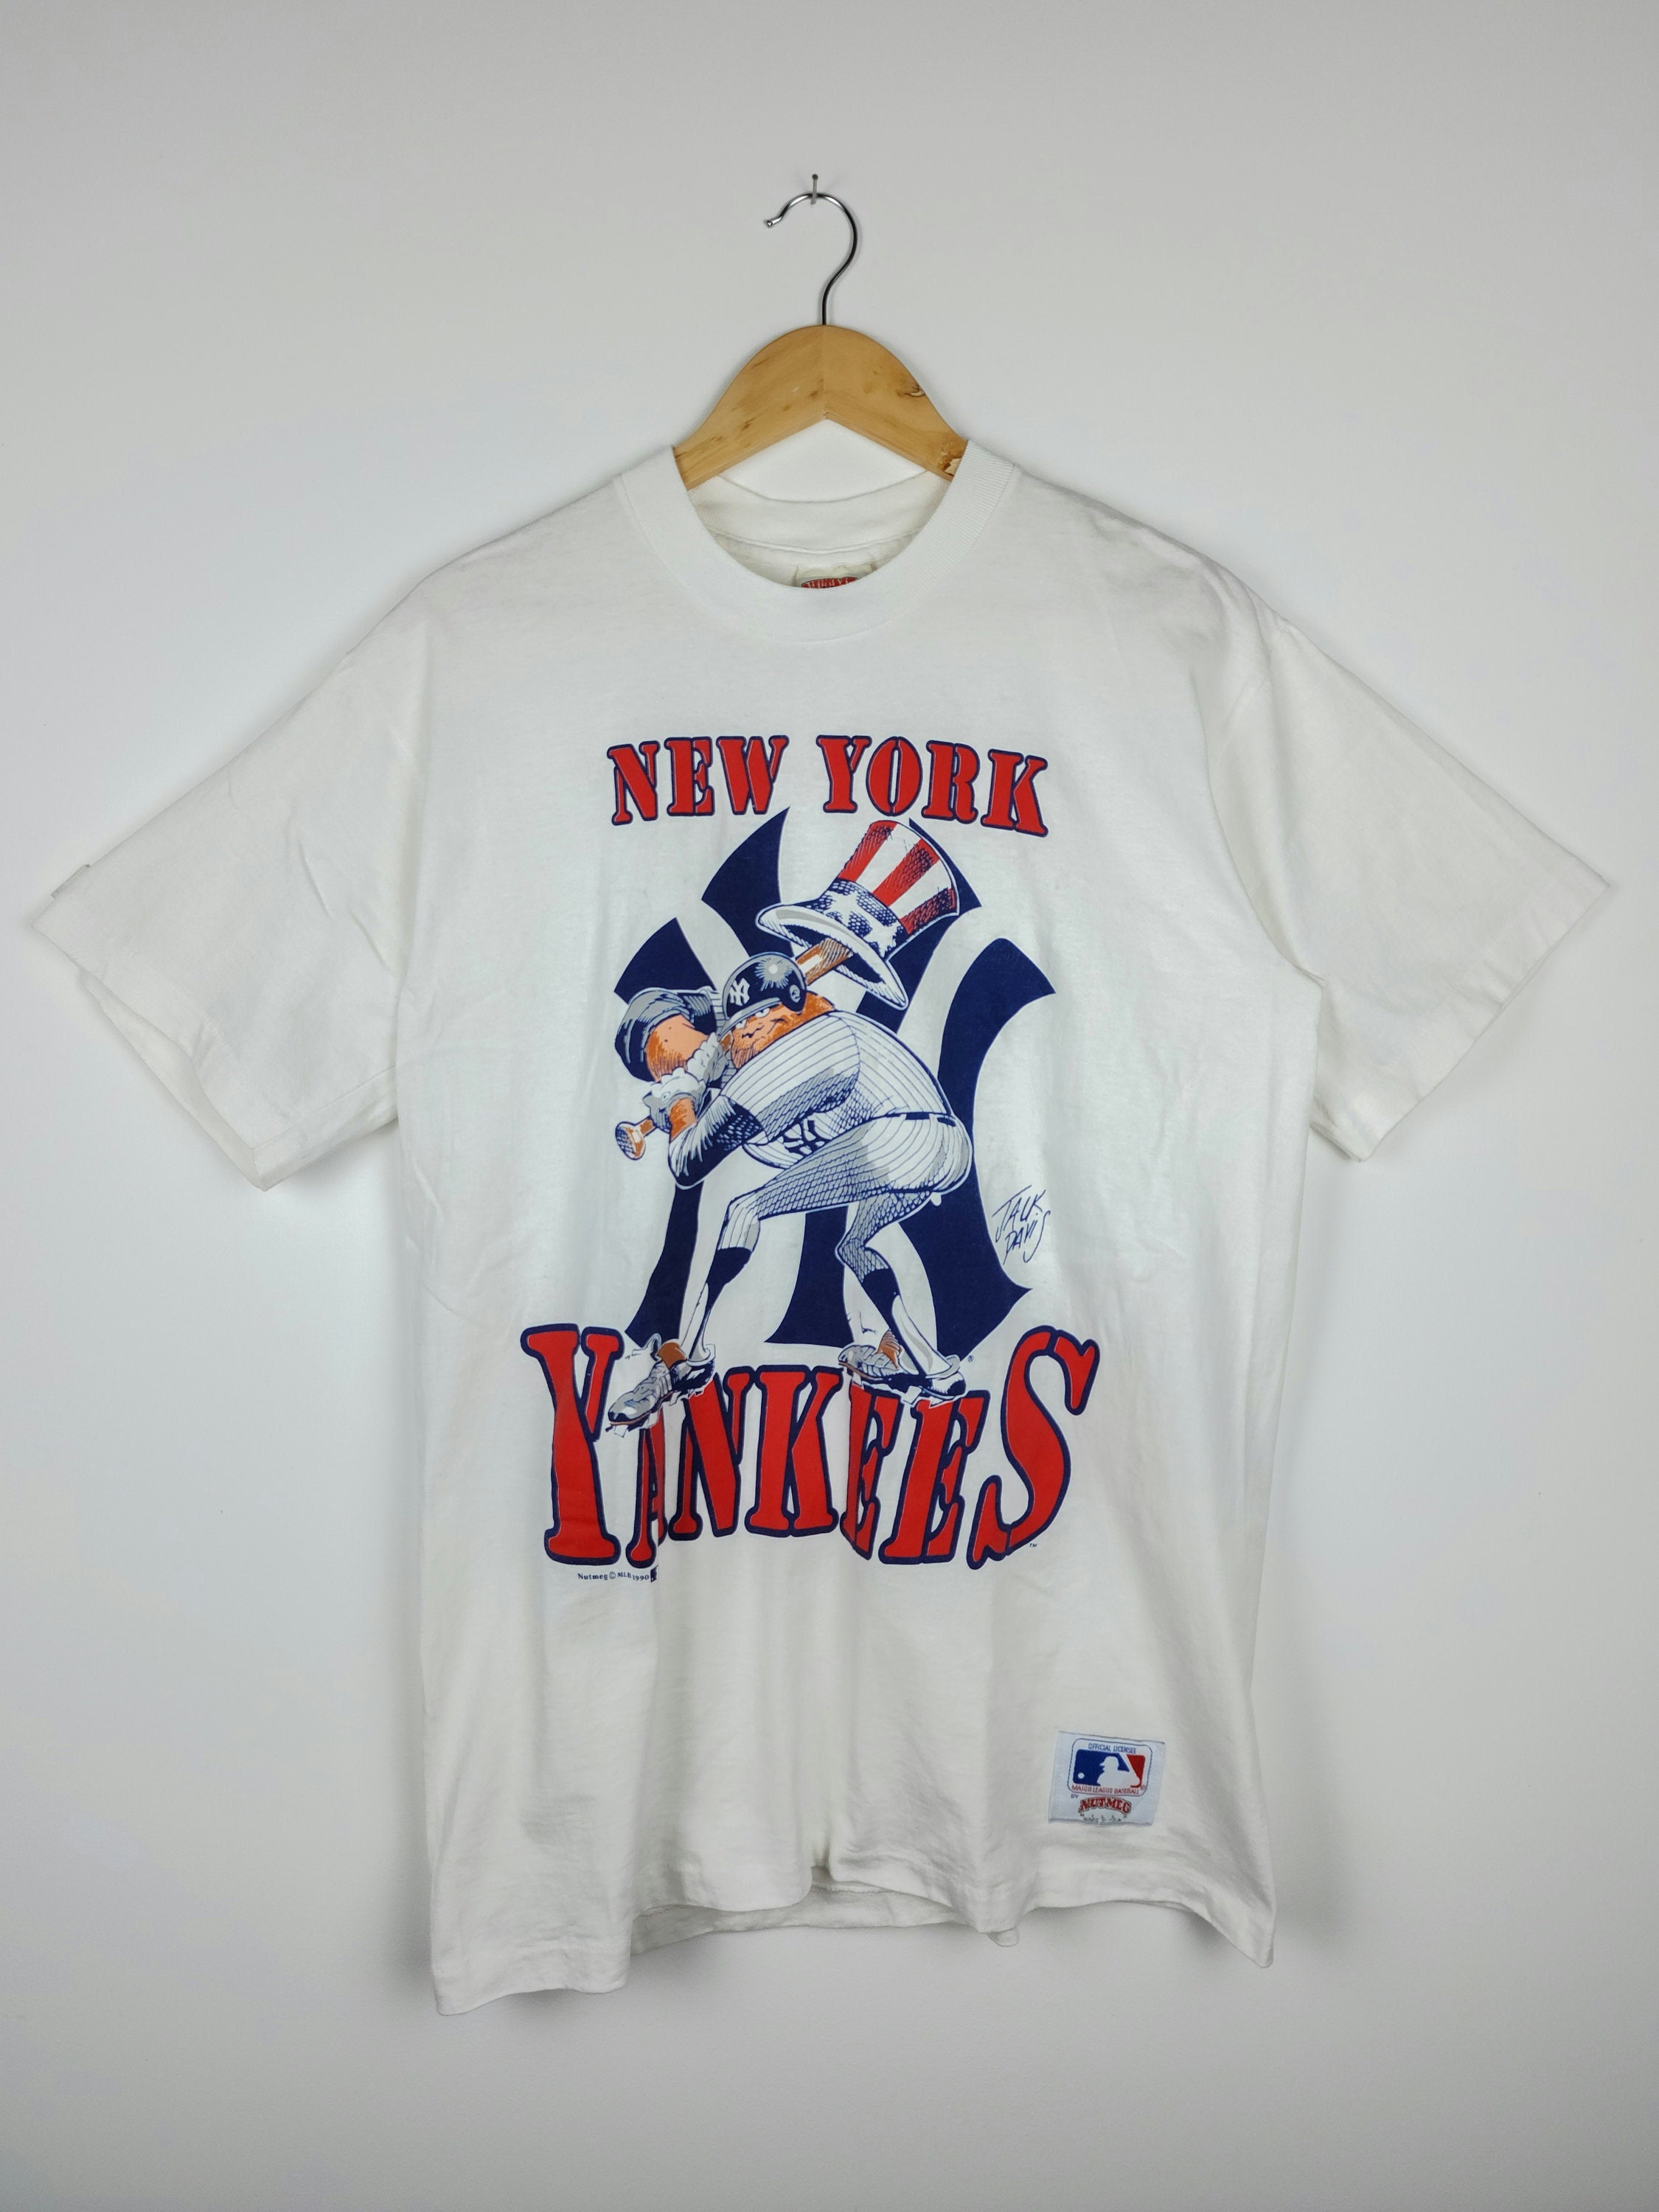 1990 New York Yankees Baby Tee